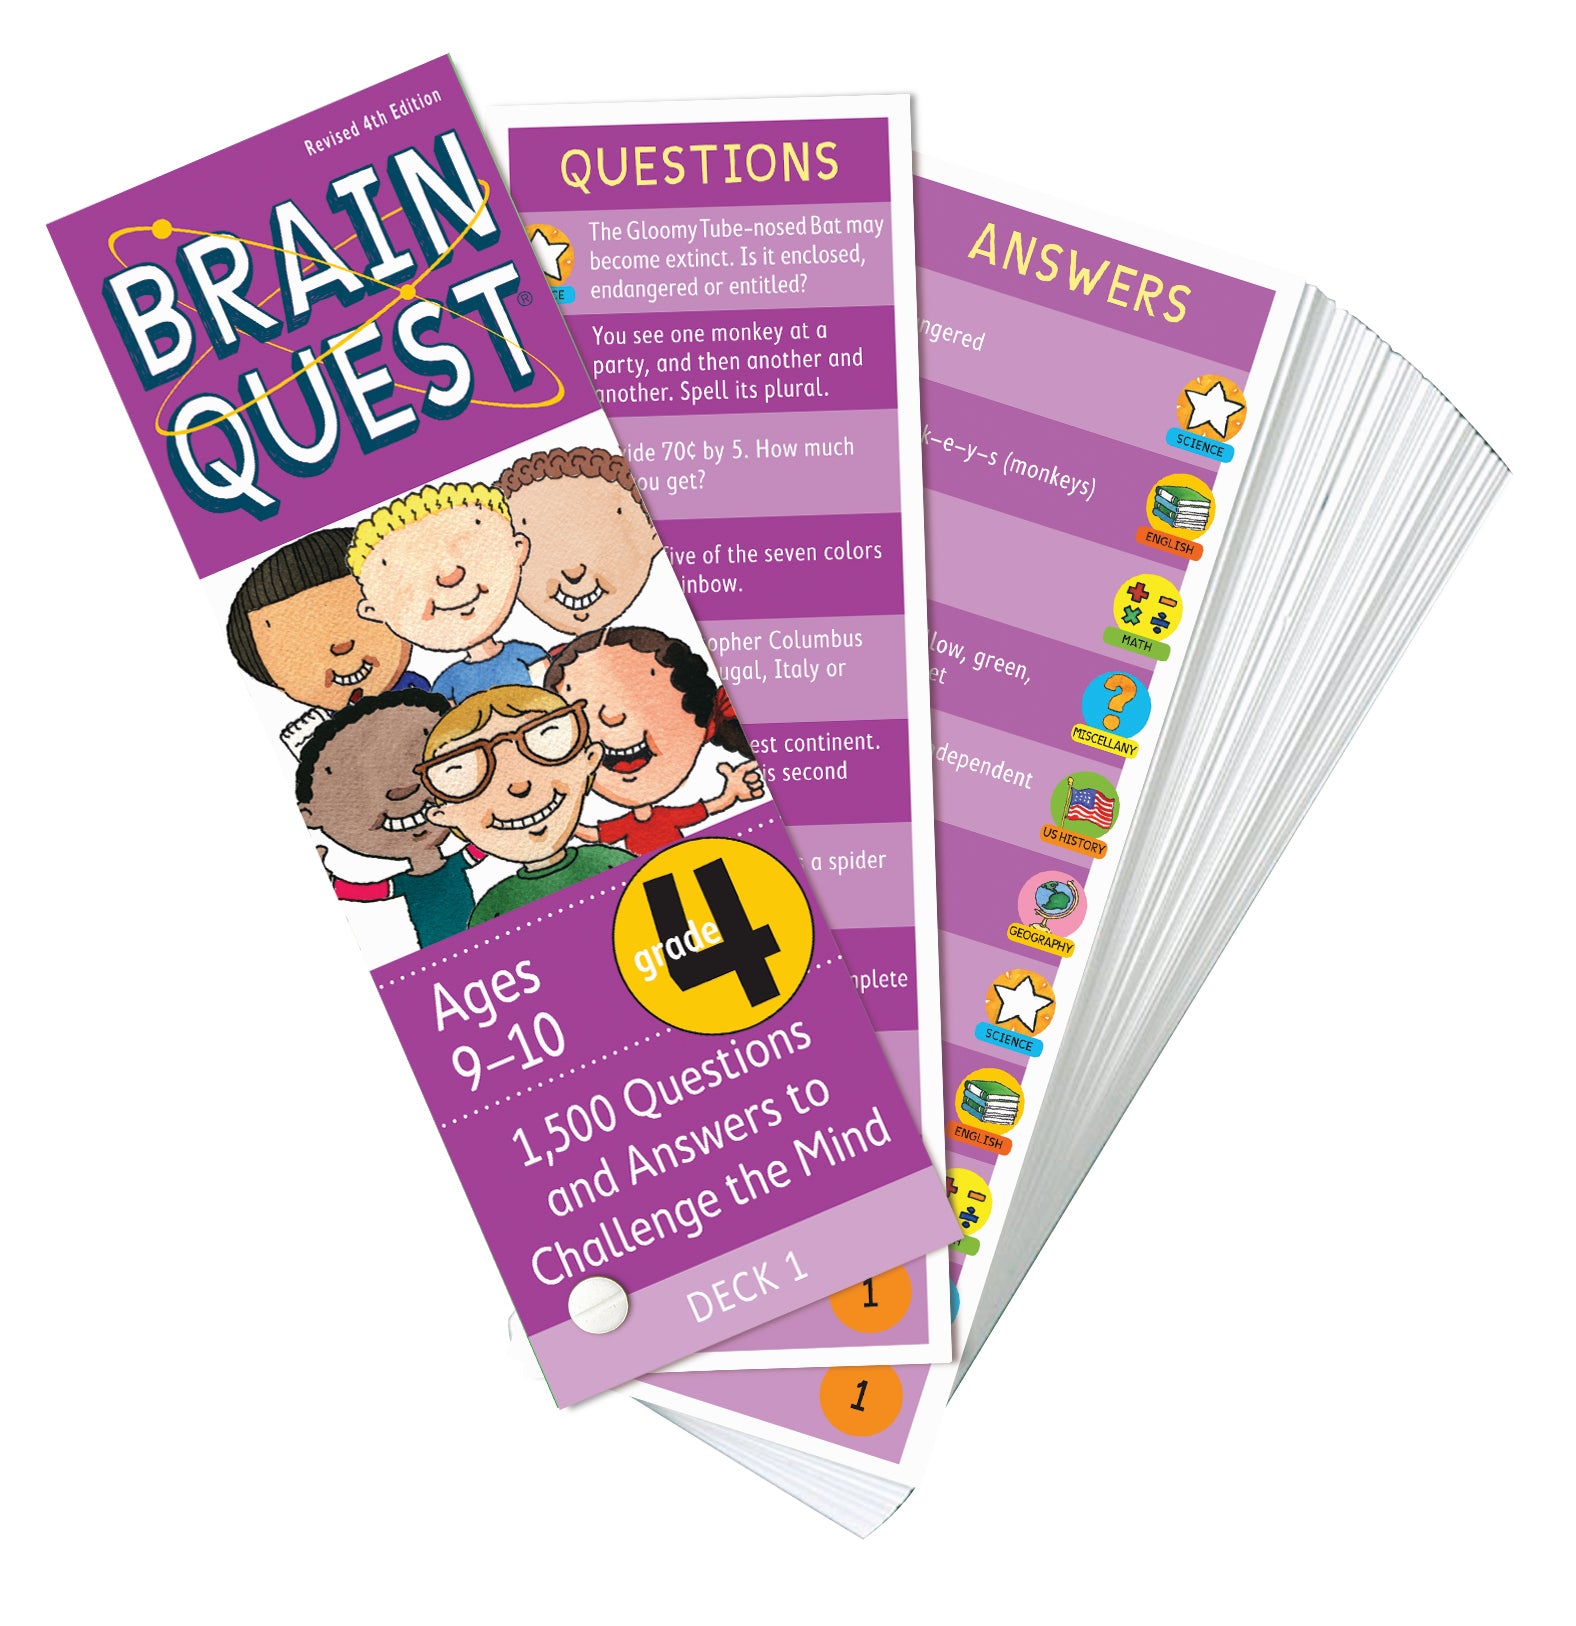 Brain Quest 4th Grade Q&A Cards